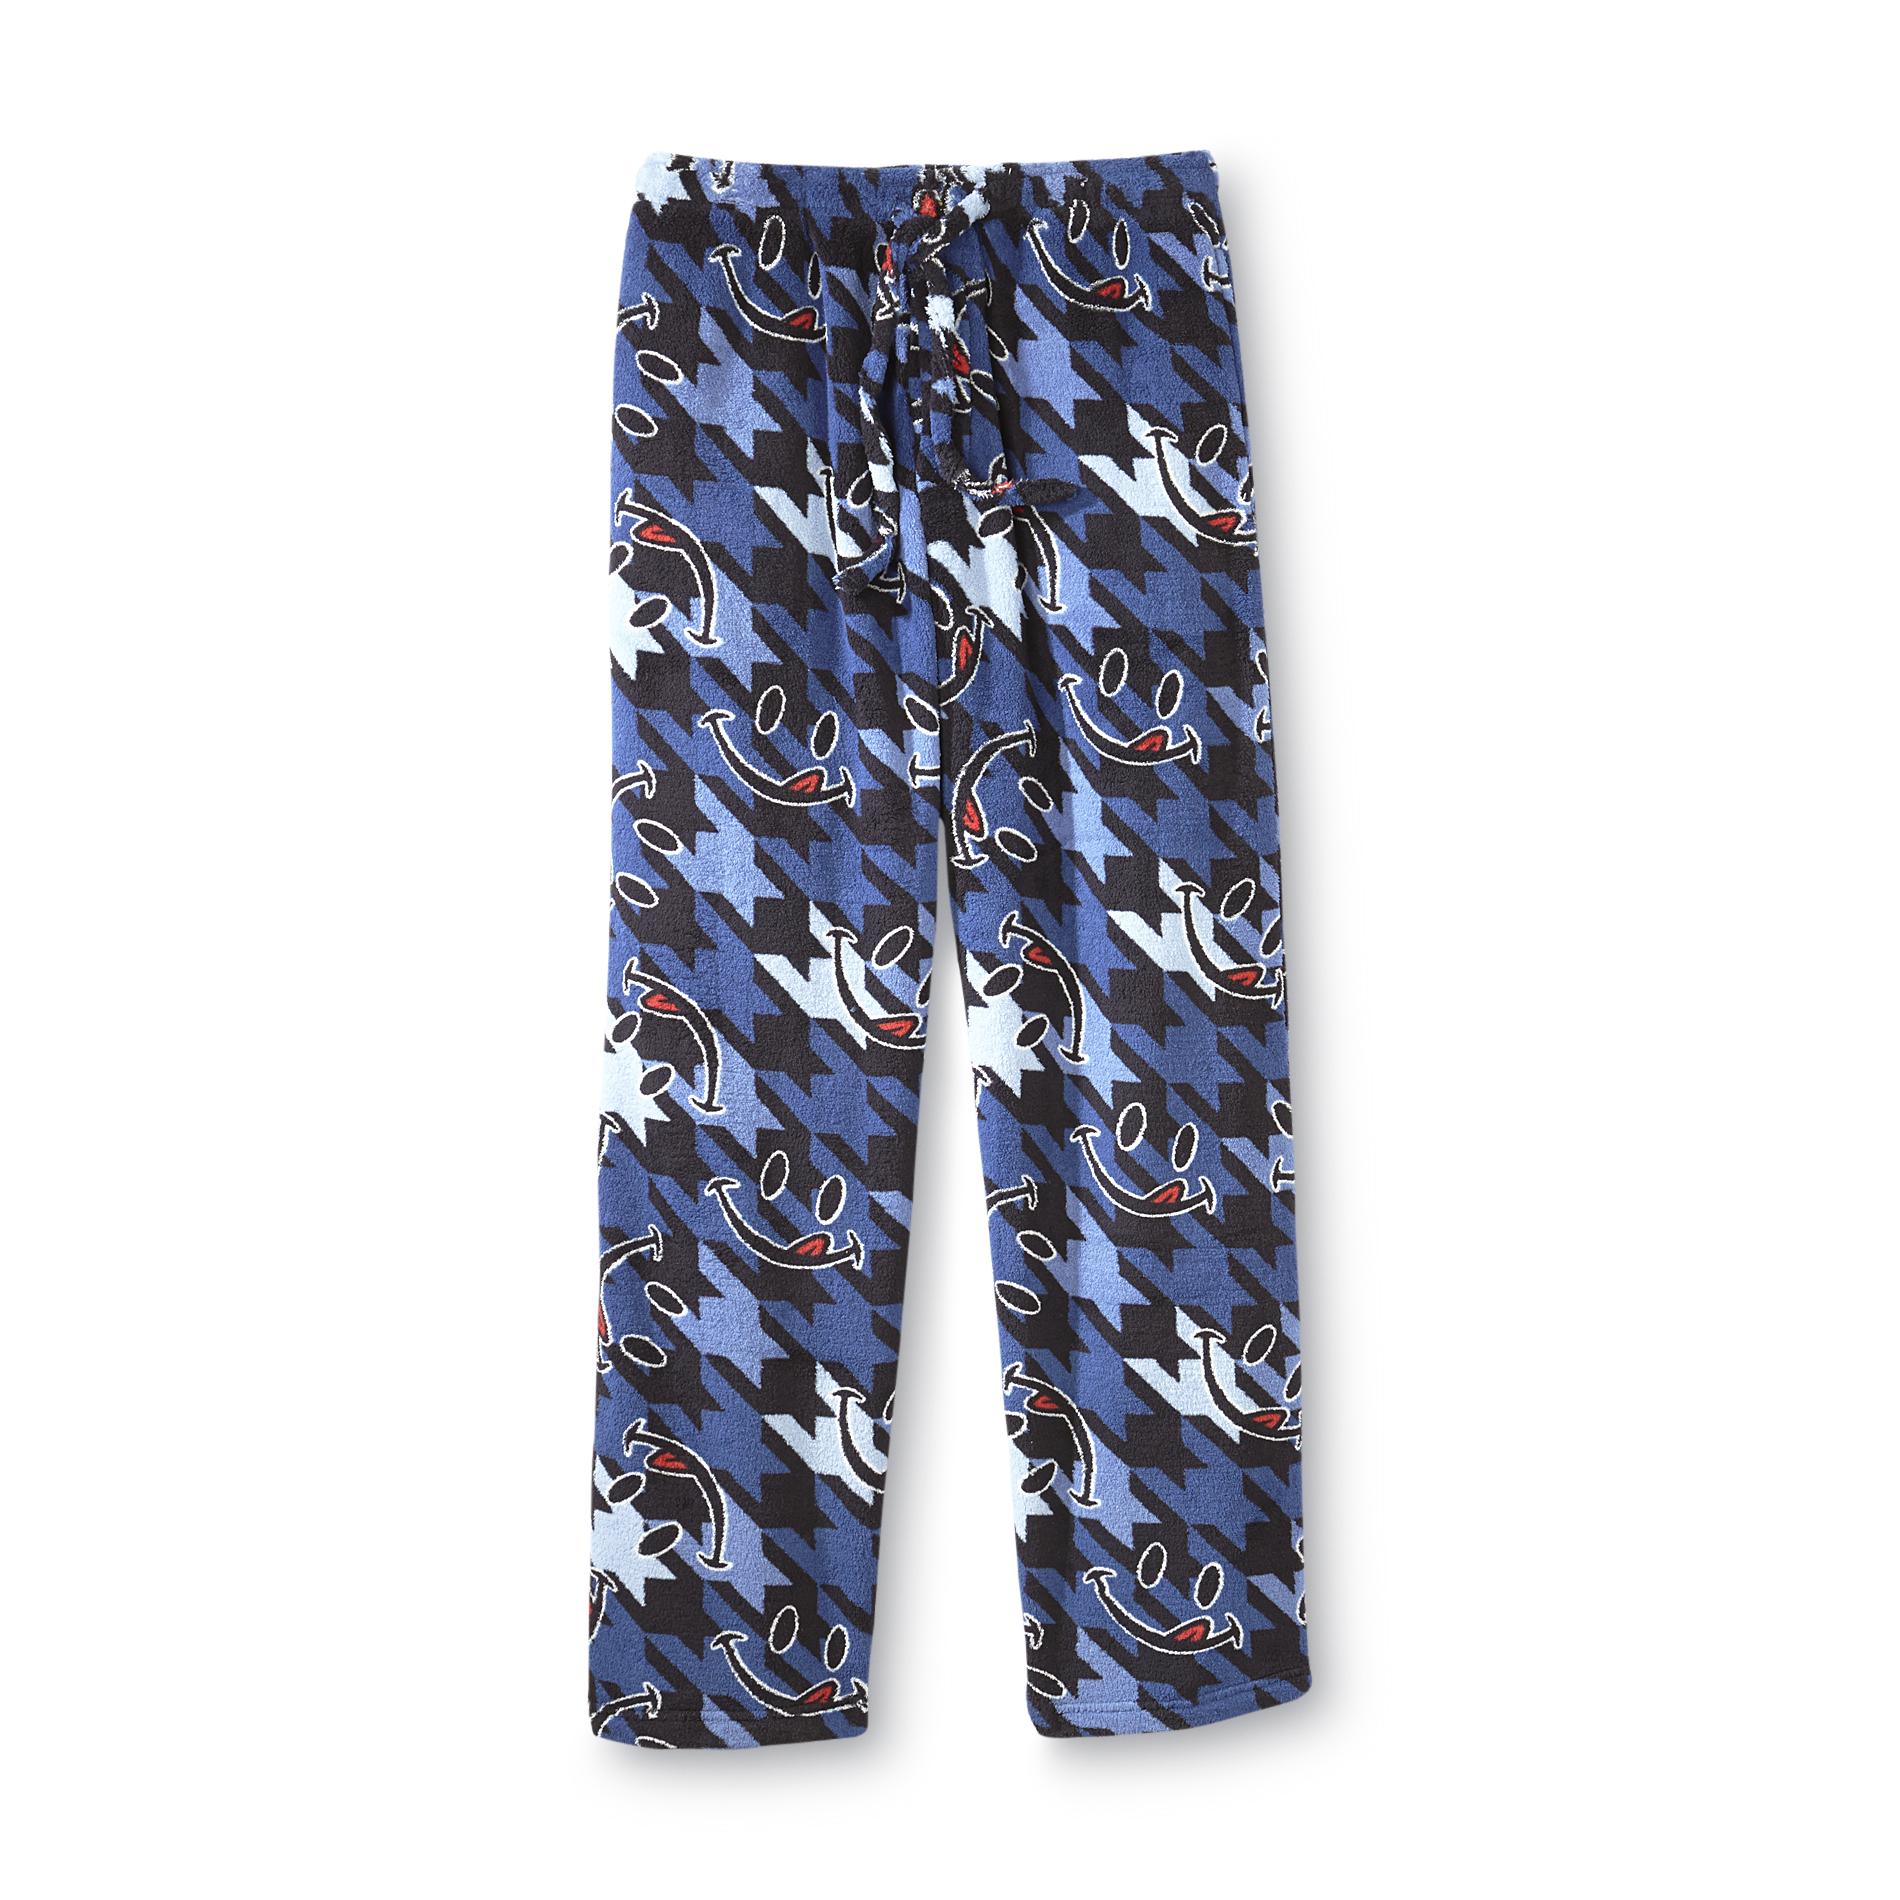 Joe Boxer Men's Fleece Pajama Pants - Houndstooth